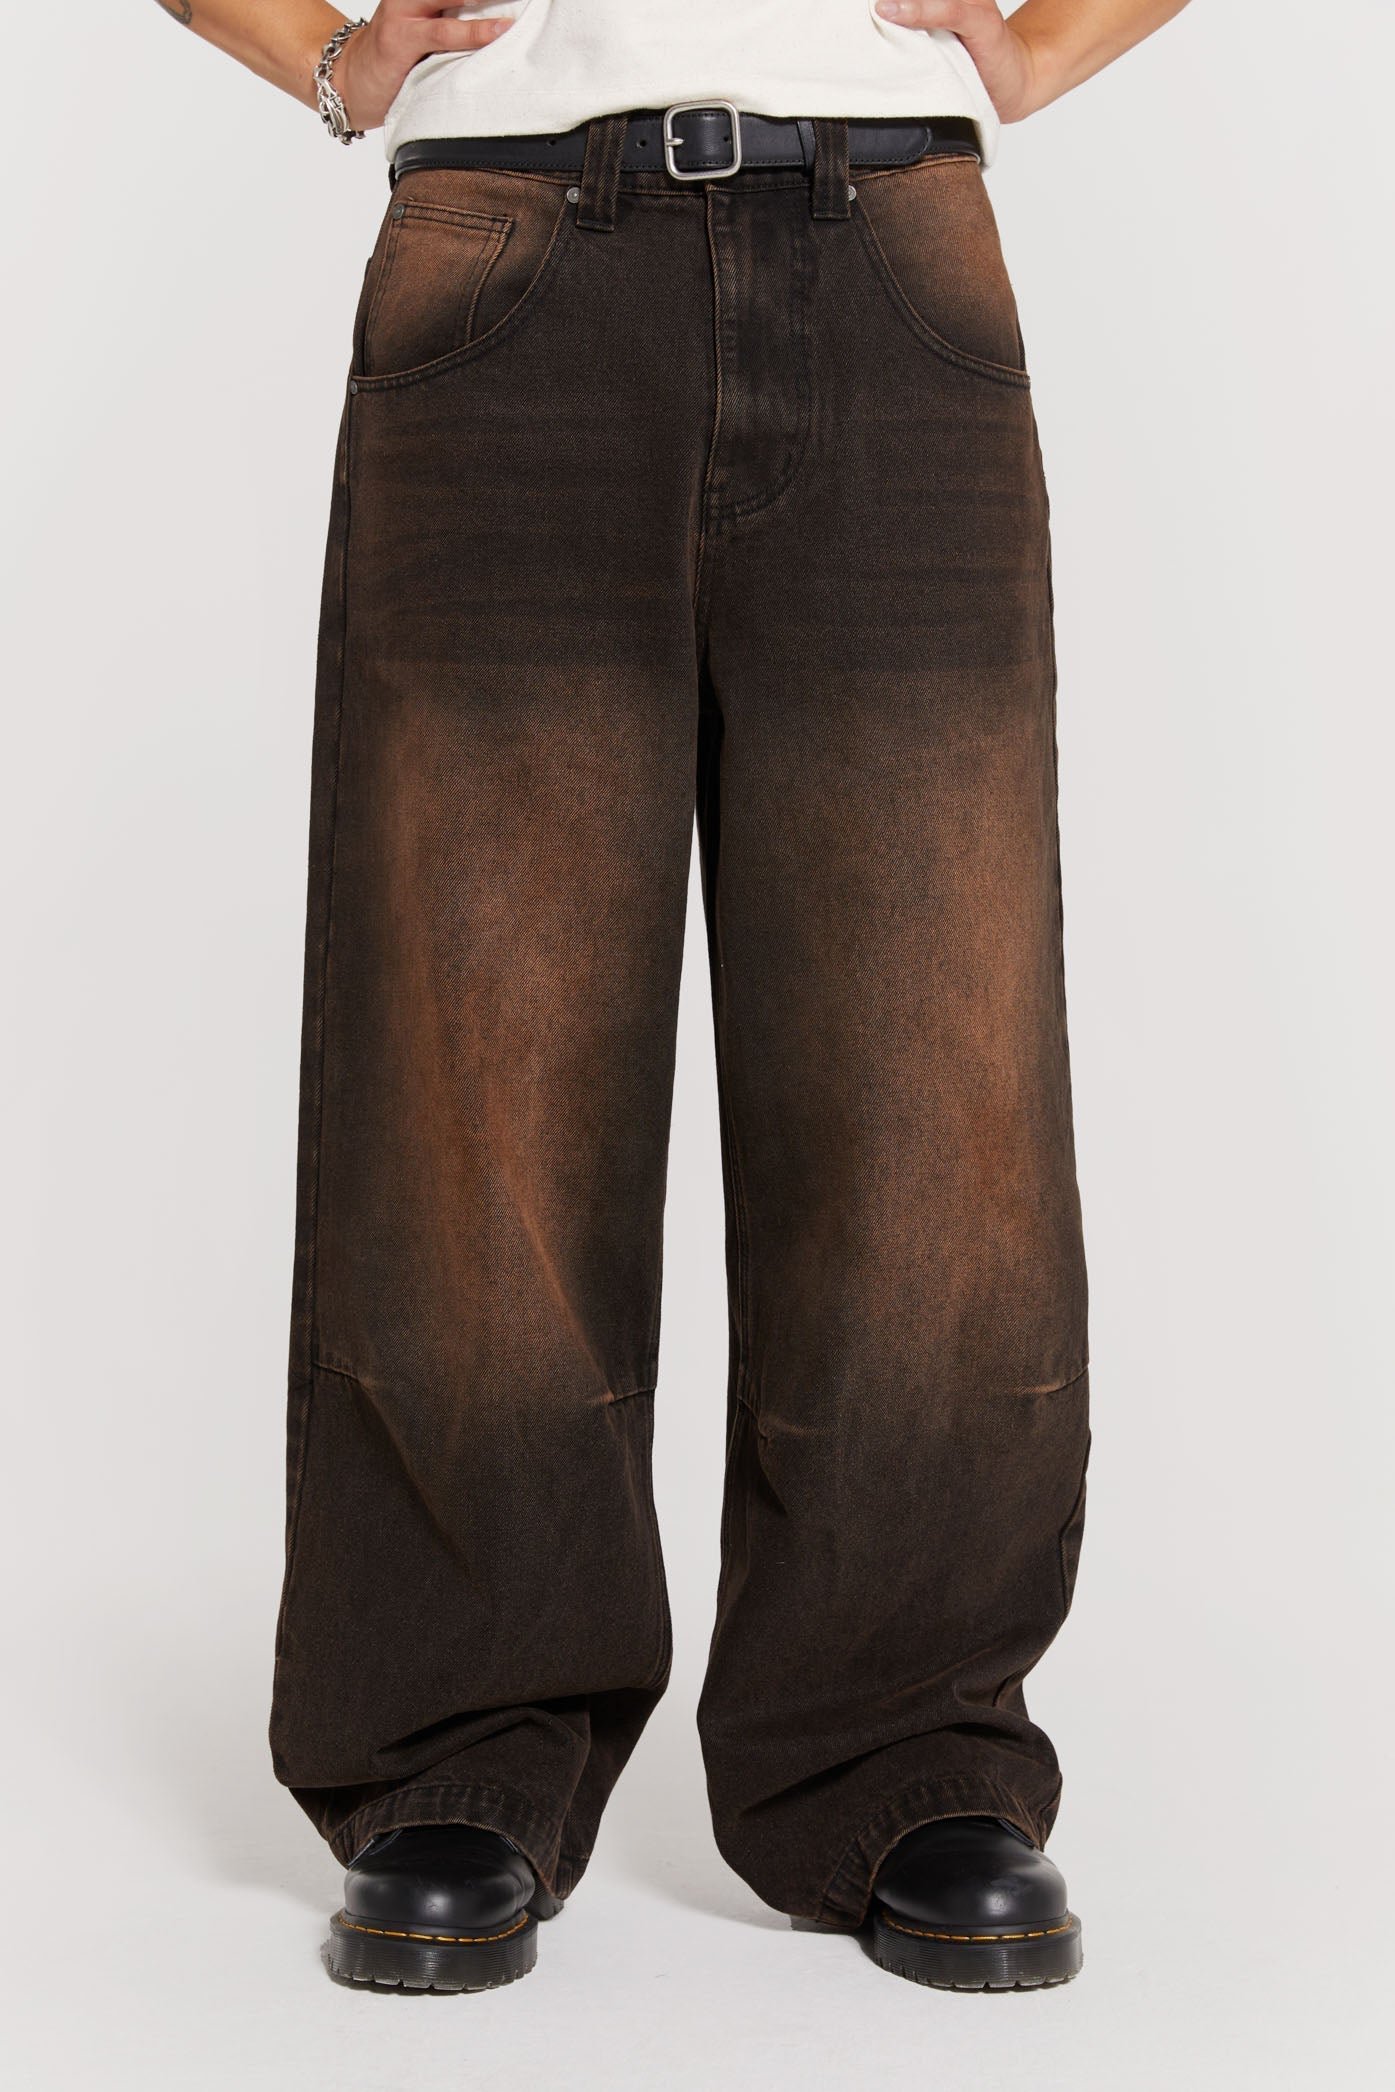 Vintage Brown Colossus Jeans | Jaded London